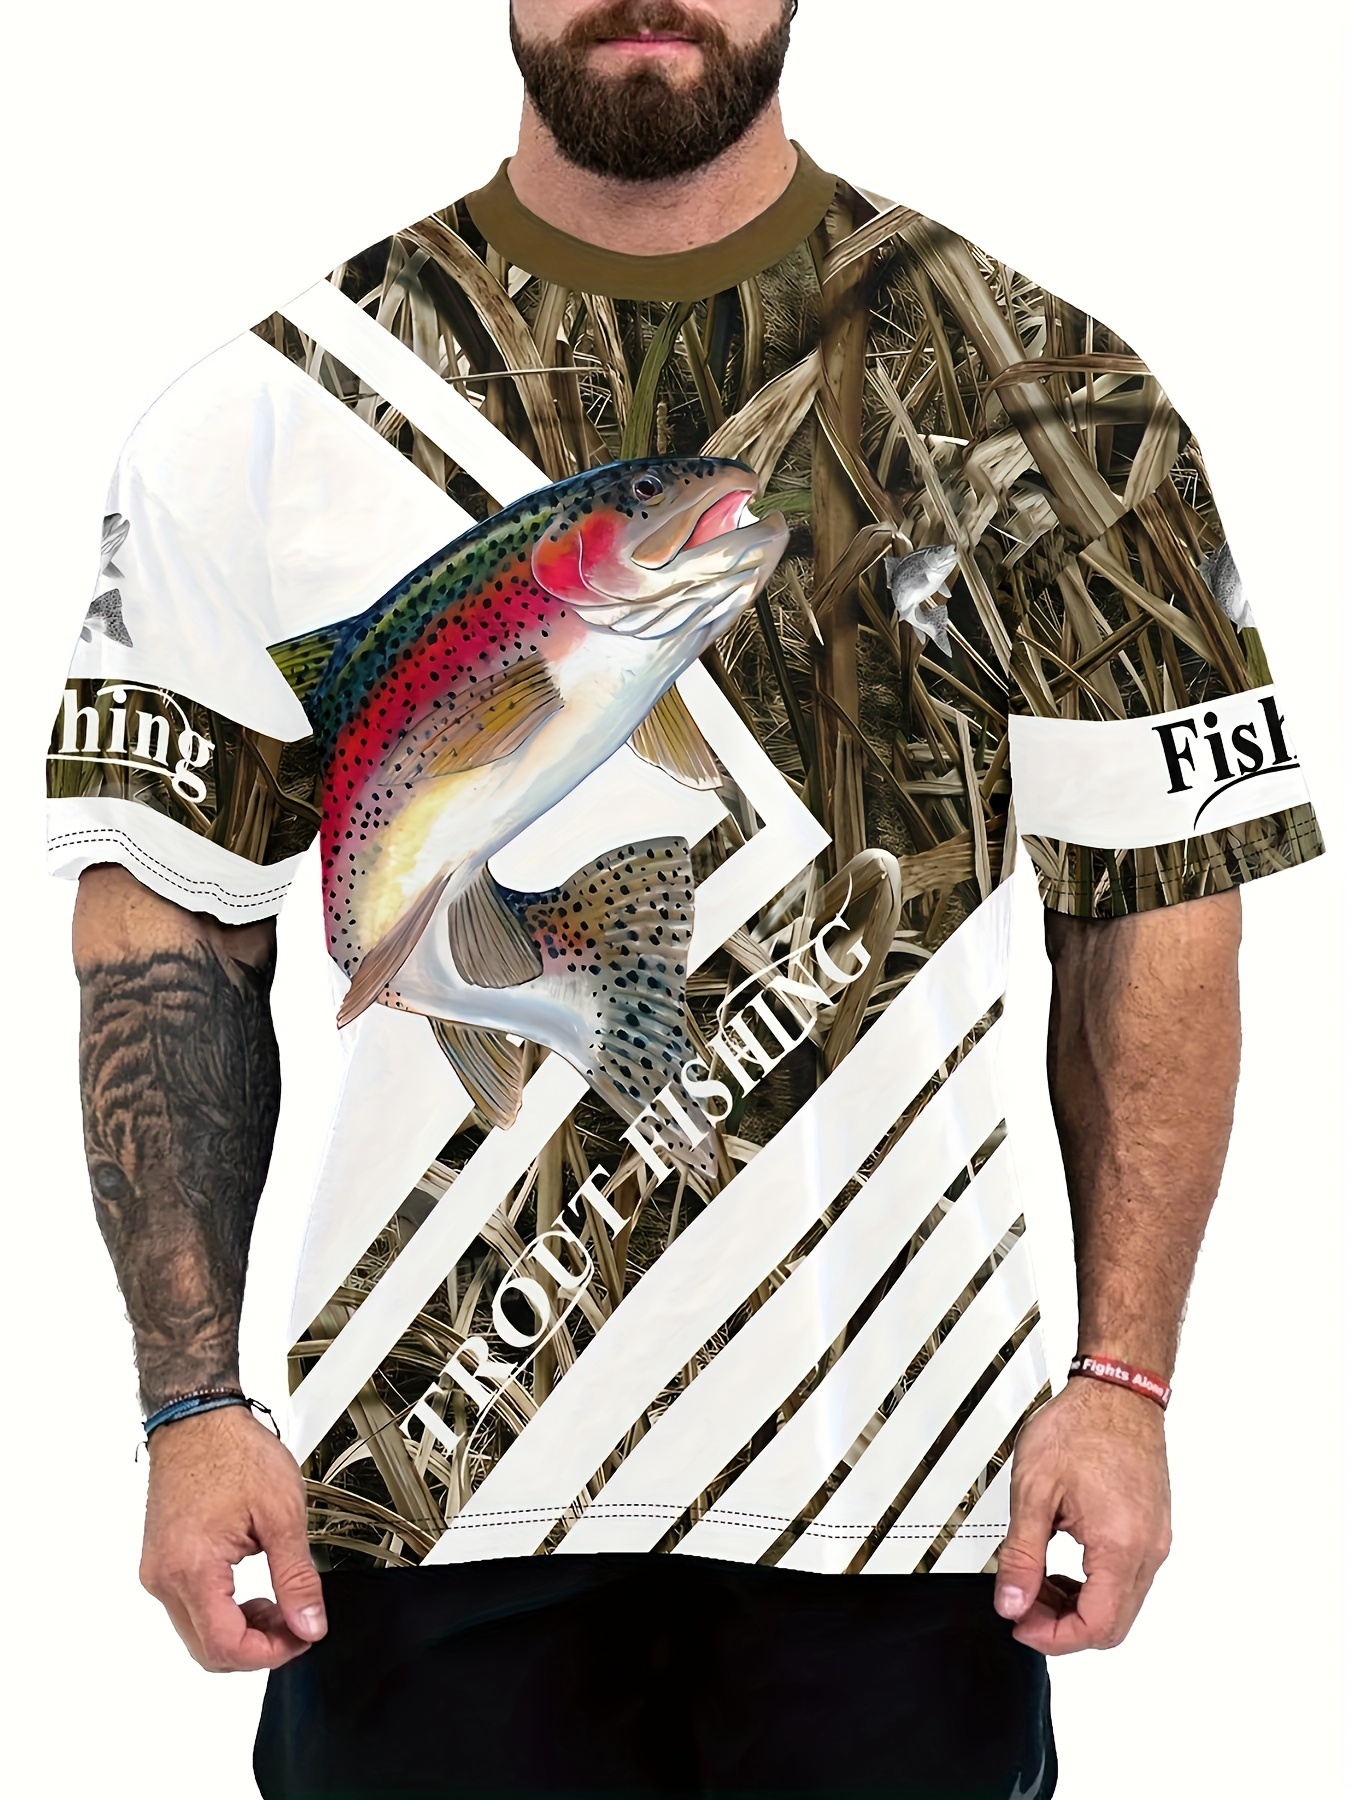  Camisas de pesca para hombres, camiseta de manga corta